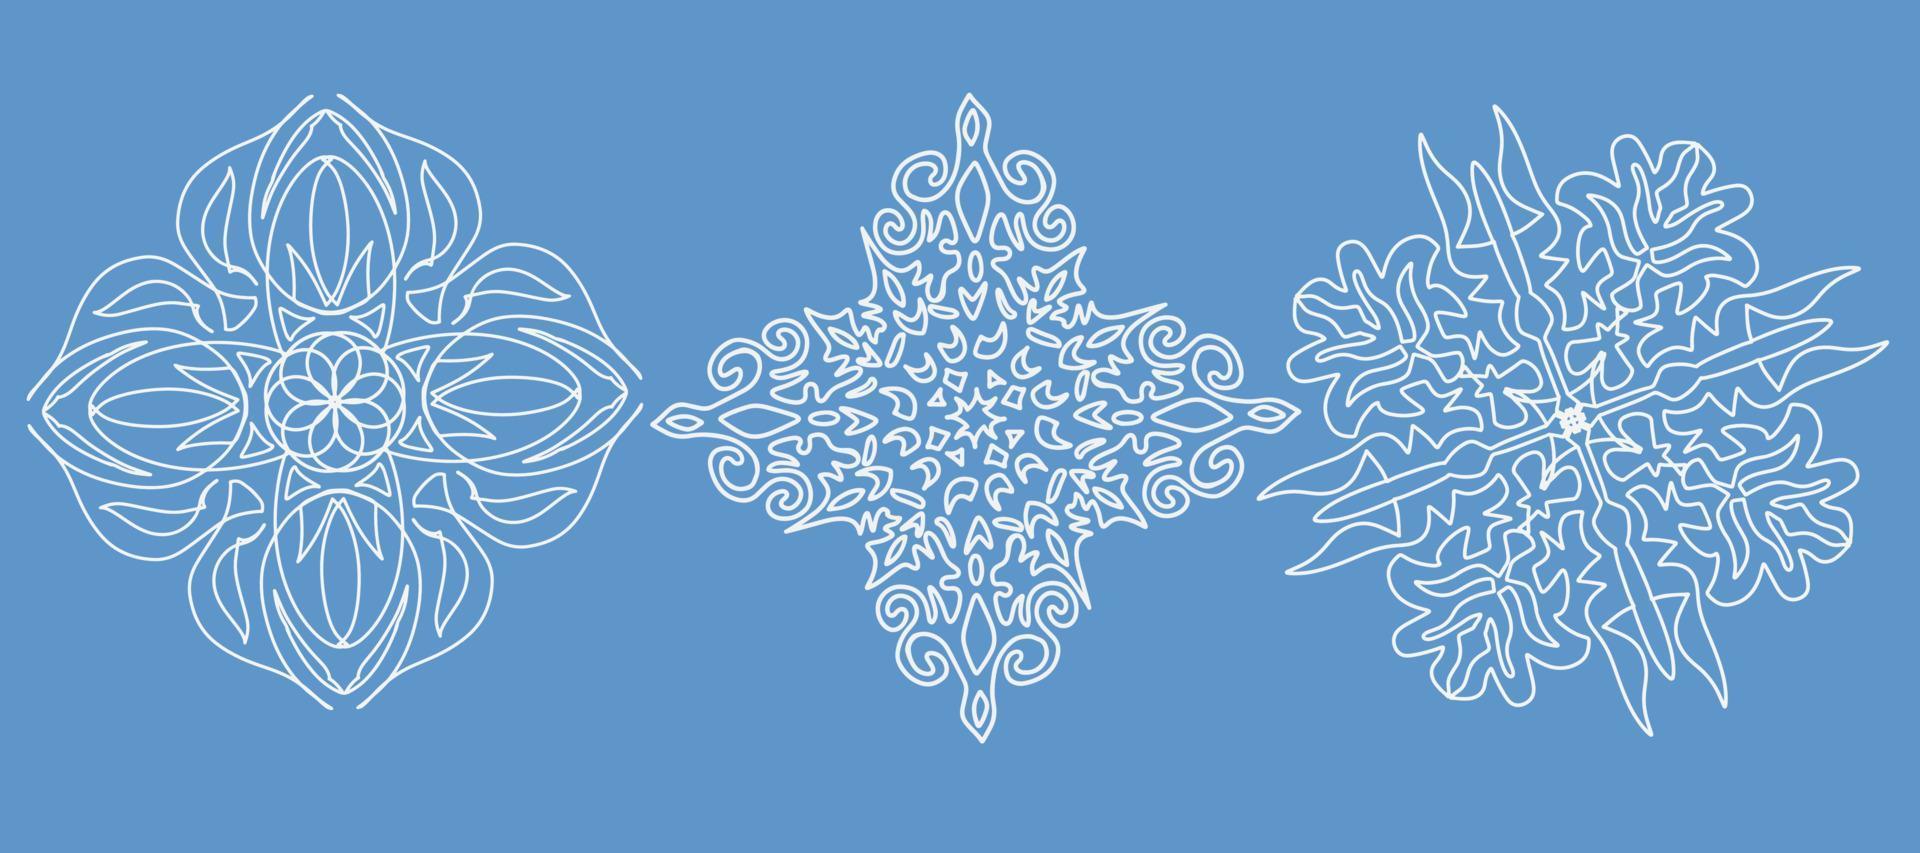 conjunto de copos de nieve de navidad sobre un fondo azul. ilustración vectorial vector